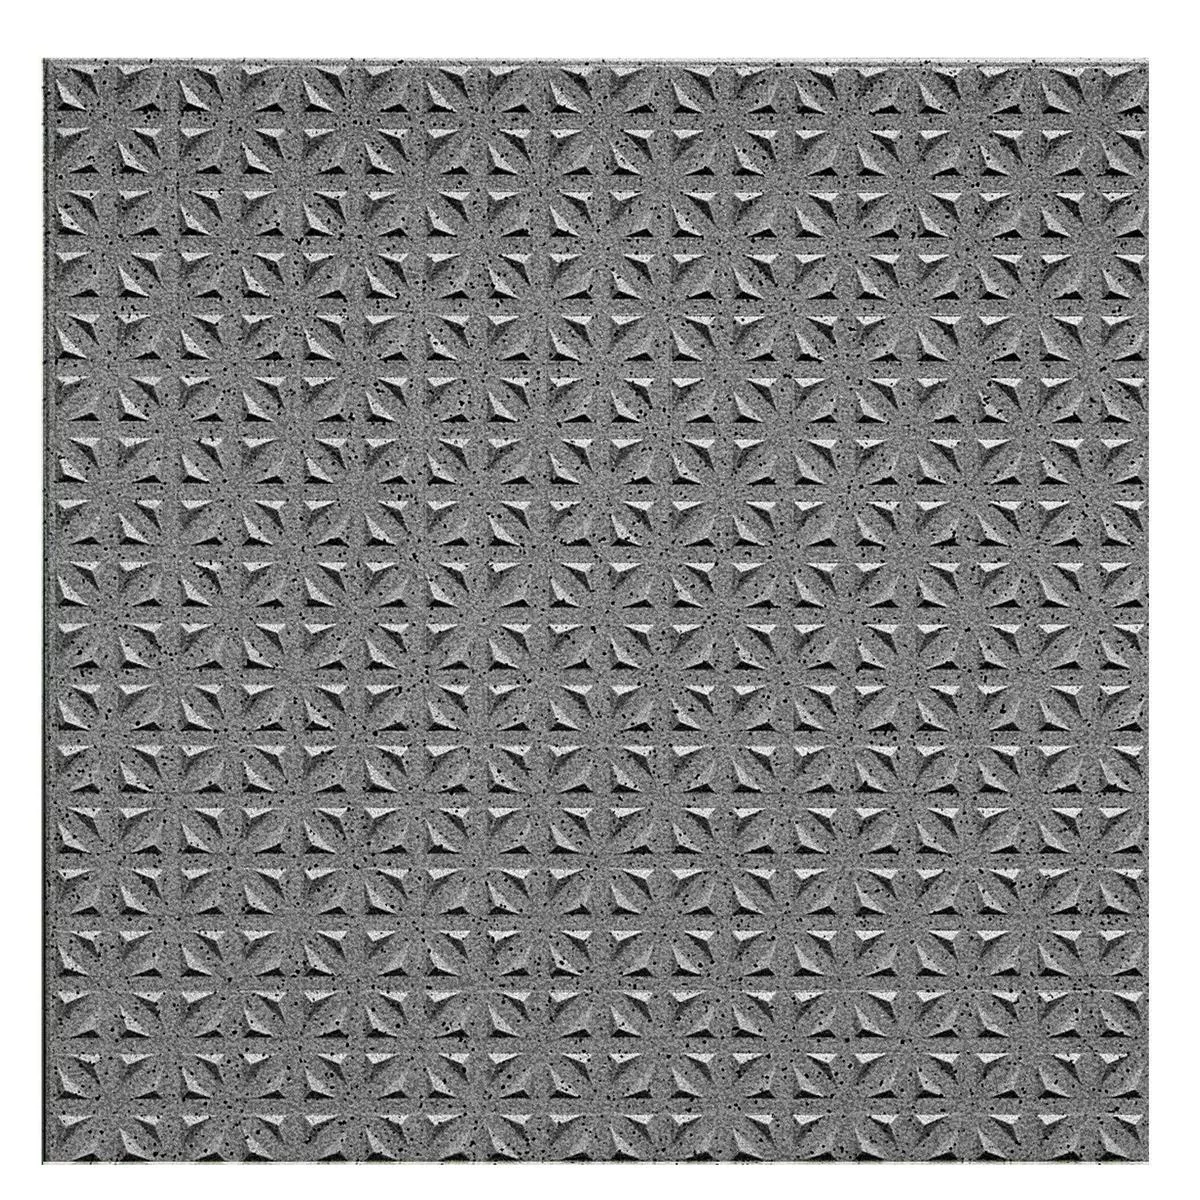 Πρότυπο Πλακάκι Δαπέδου Ψιλό Σιτάρι R12/V4 Ανθρακίτης Διάστικτος 15x15cm